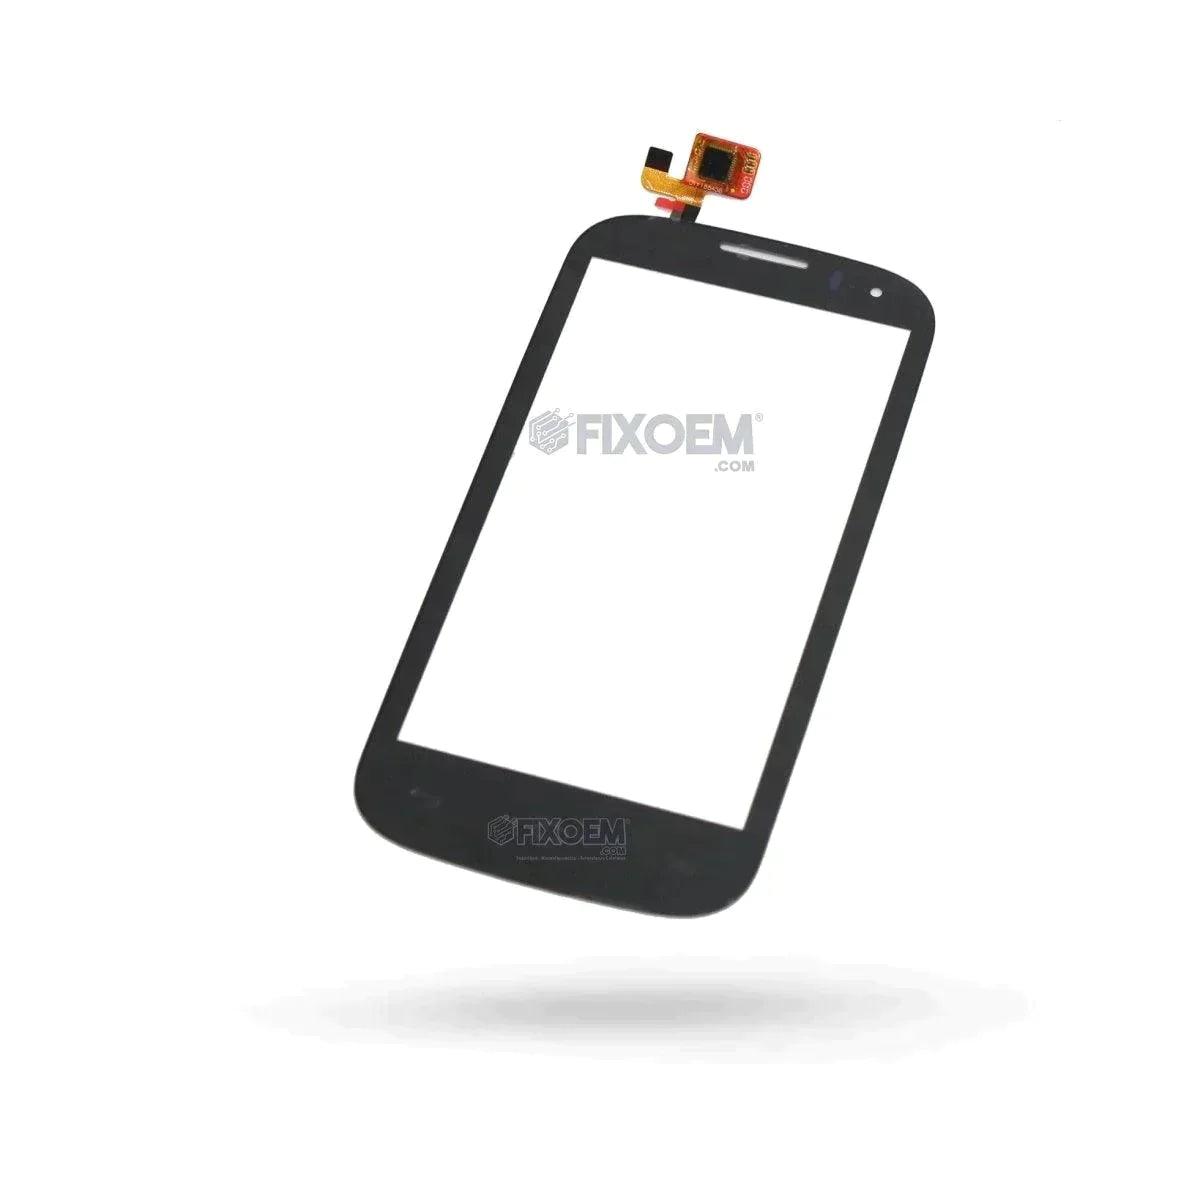 Touch Alcatel Pop C5 5036A a solo $ 70.00 Refaccion y puestos celulares, refurbish y microelectronica.- FixOEM